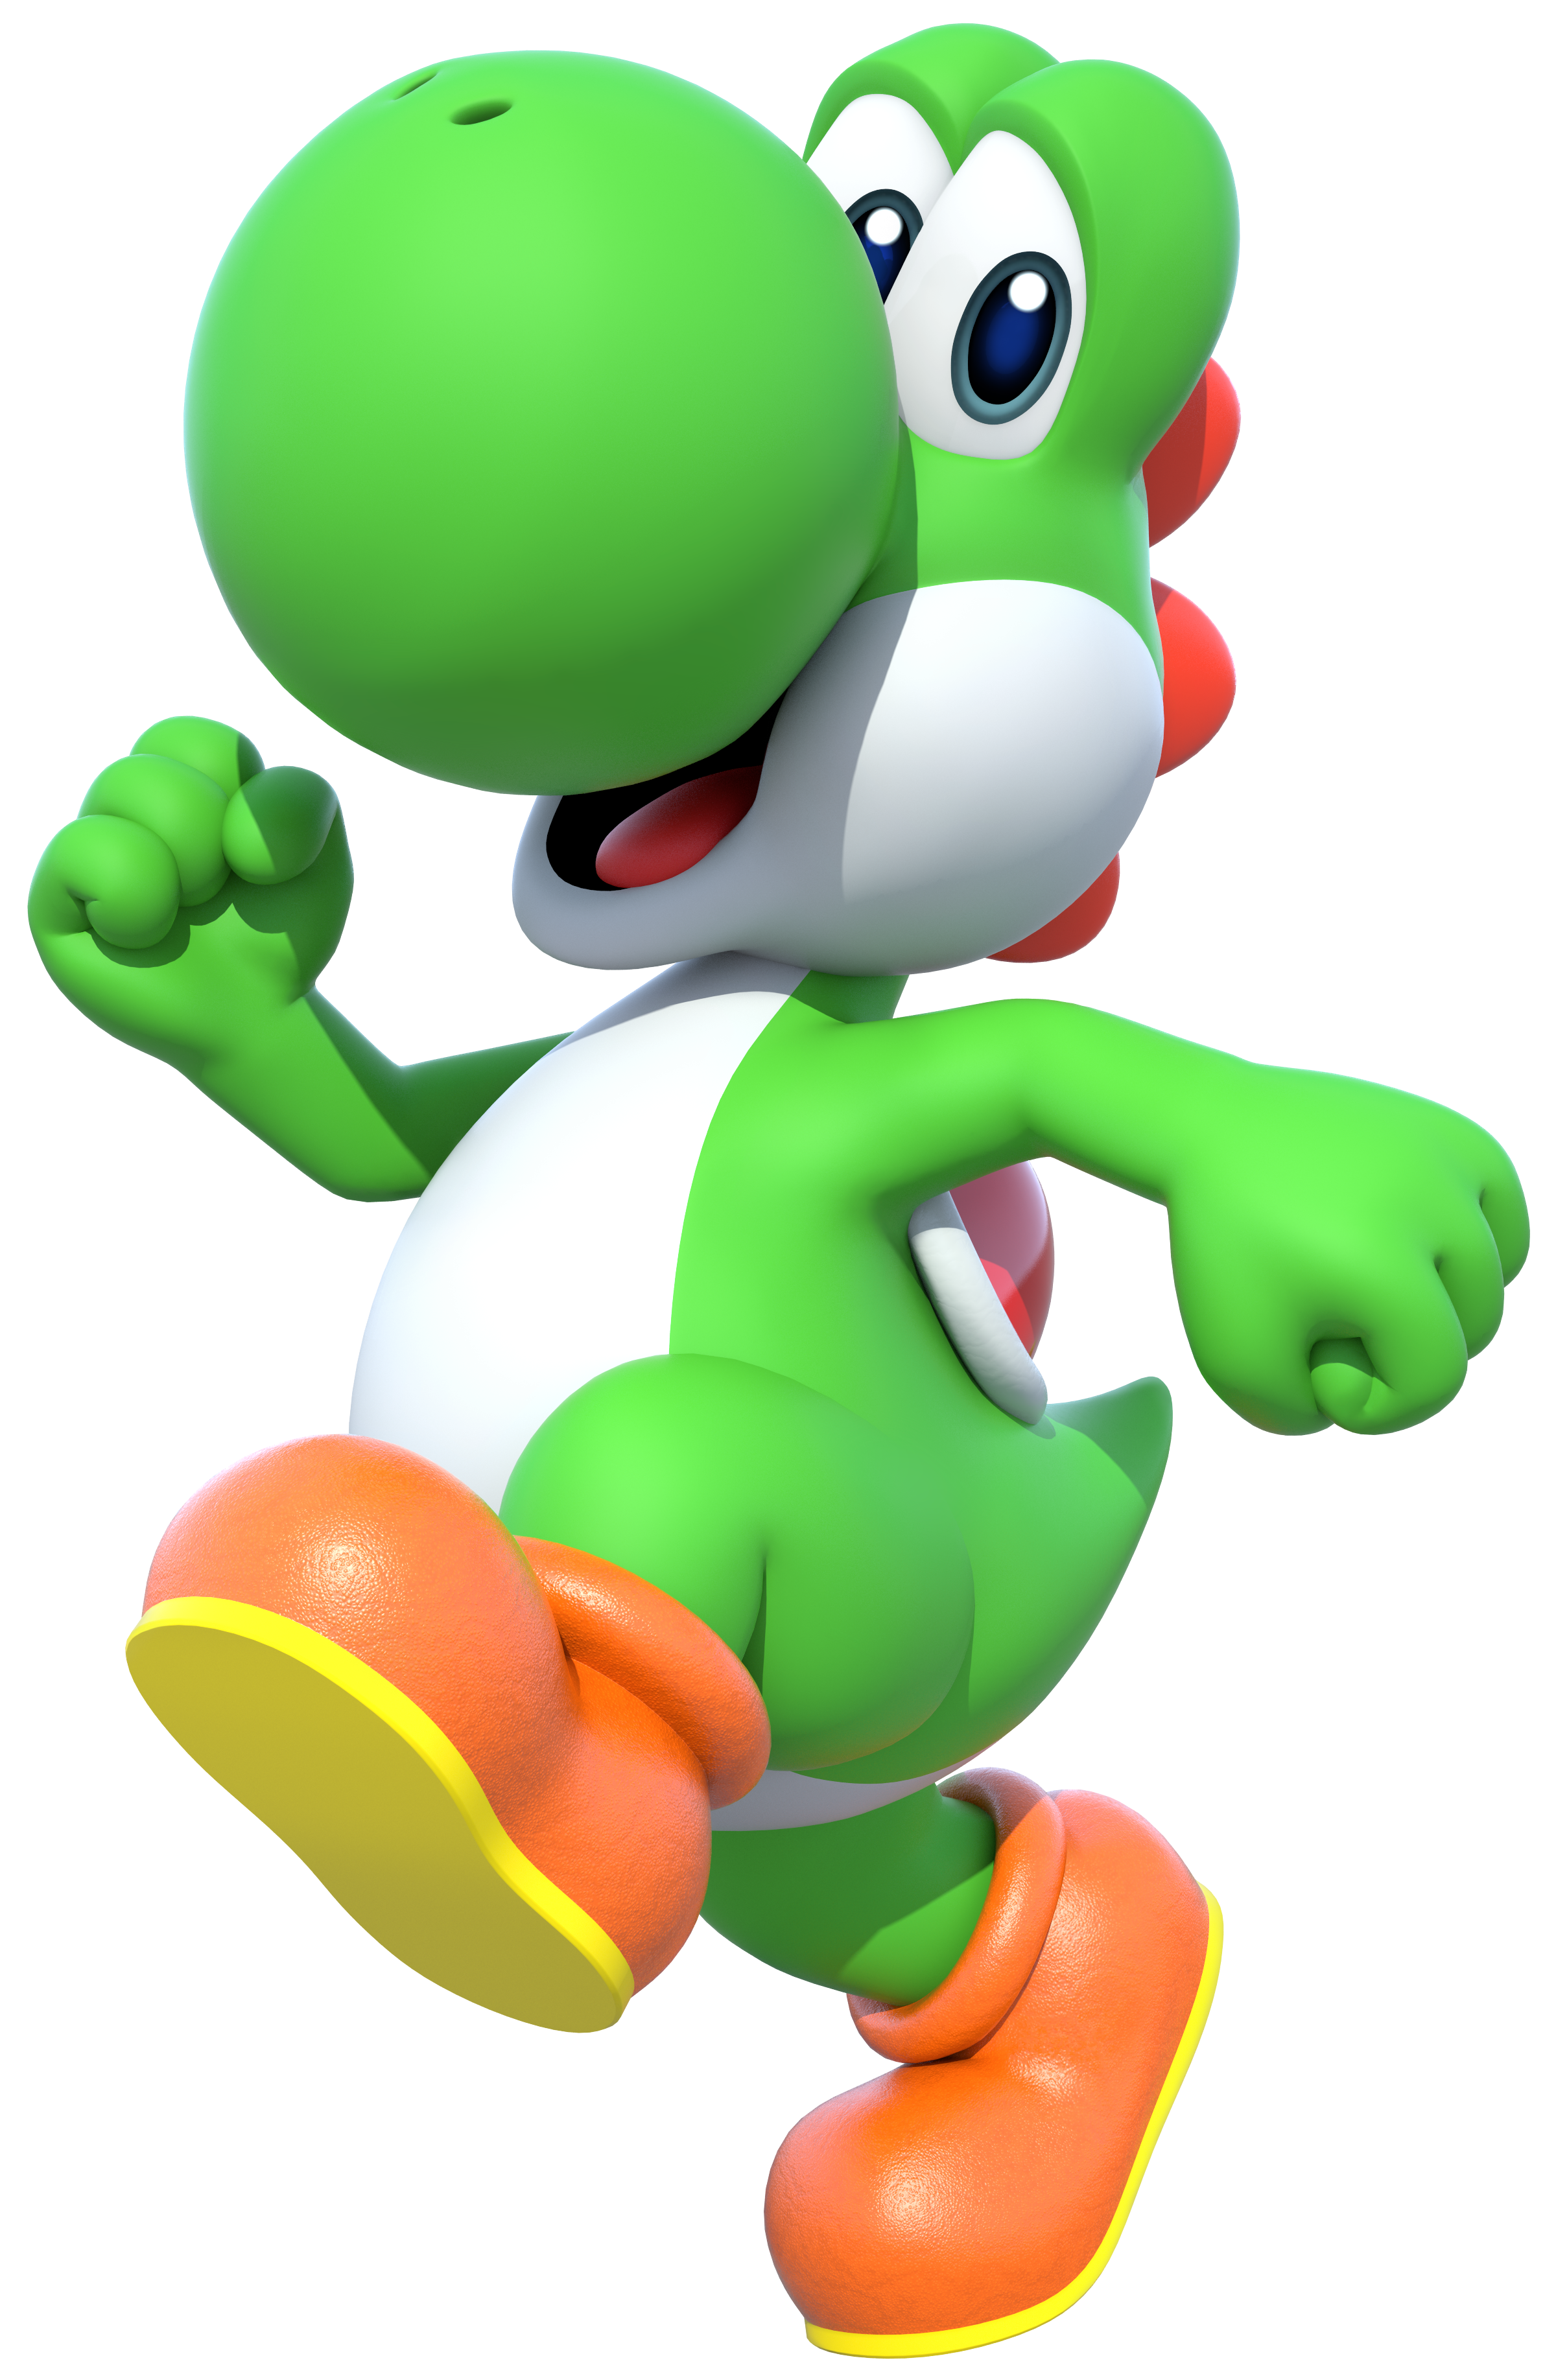 Yoshi (species) - Super Mario Wiki, the Mario encyclopedia